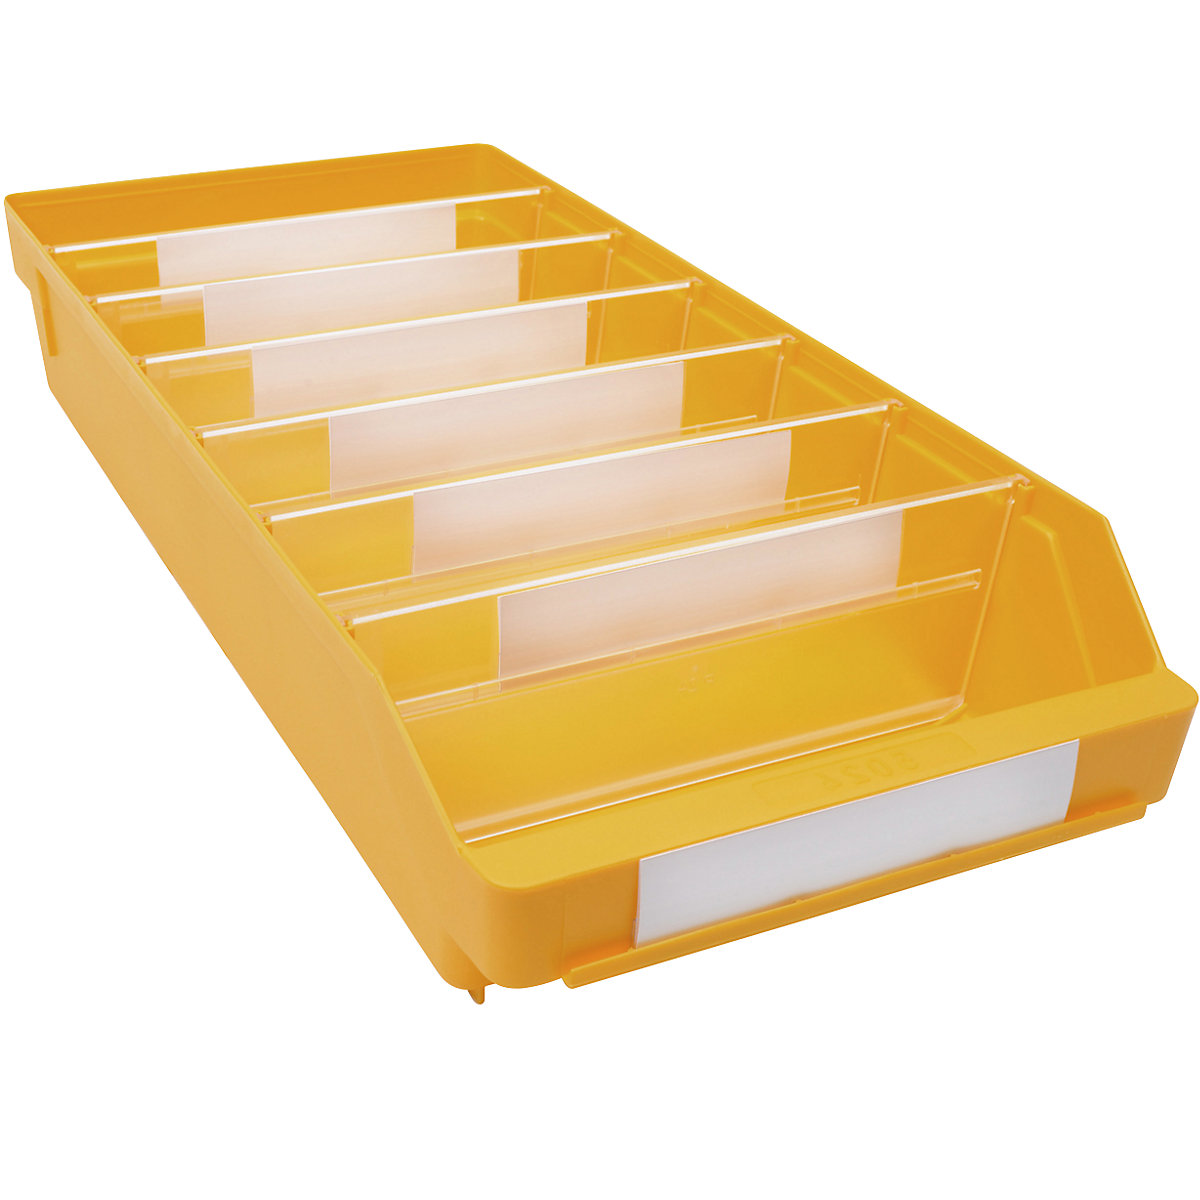 Kutija za regale od polipropilena otpornog na udarce – STEMO, u žutoj boji, DxŠxV 500 x 240 x 95 mm, pak. 15 kom.-16